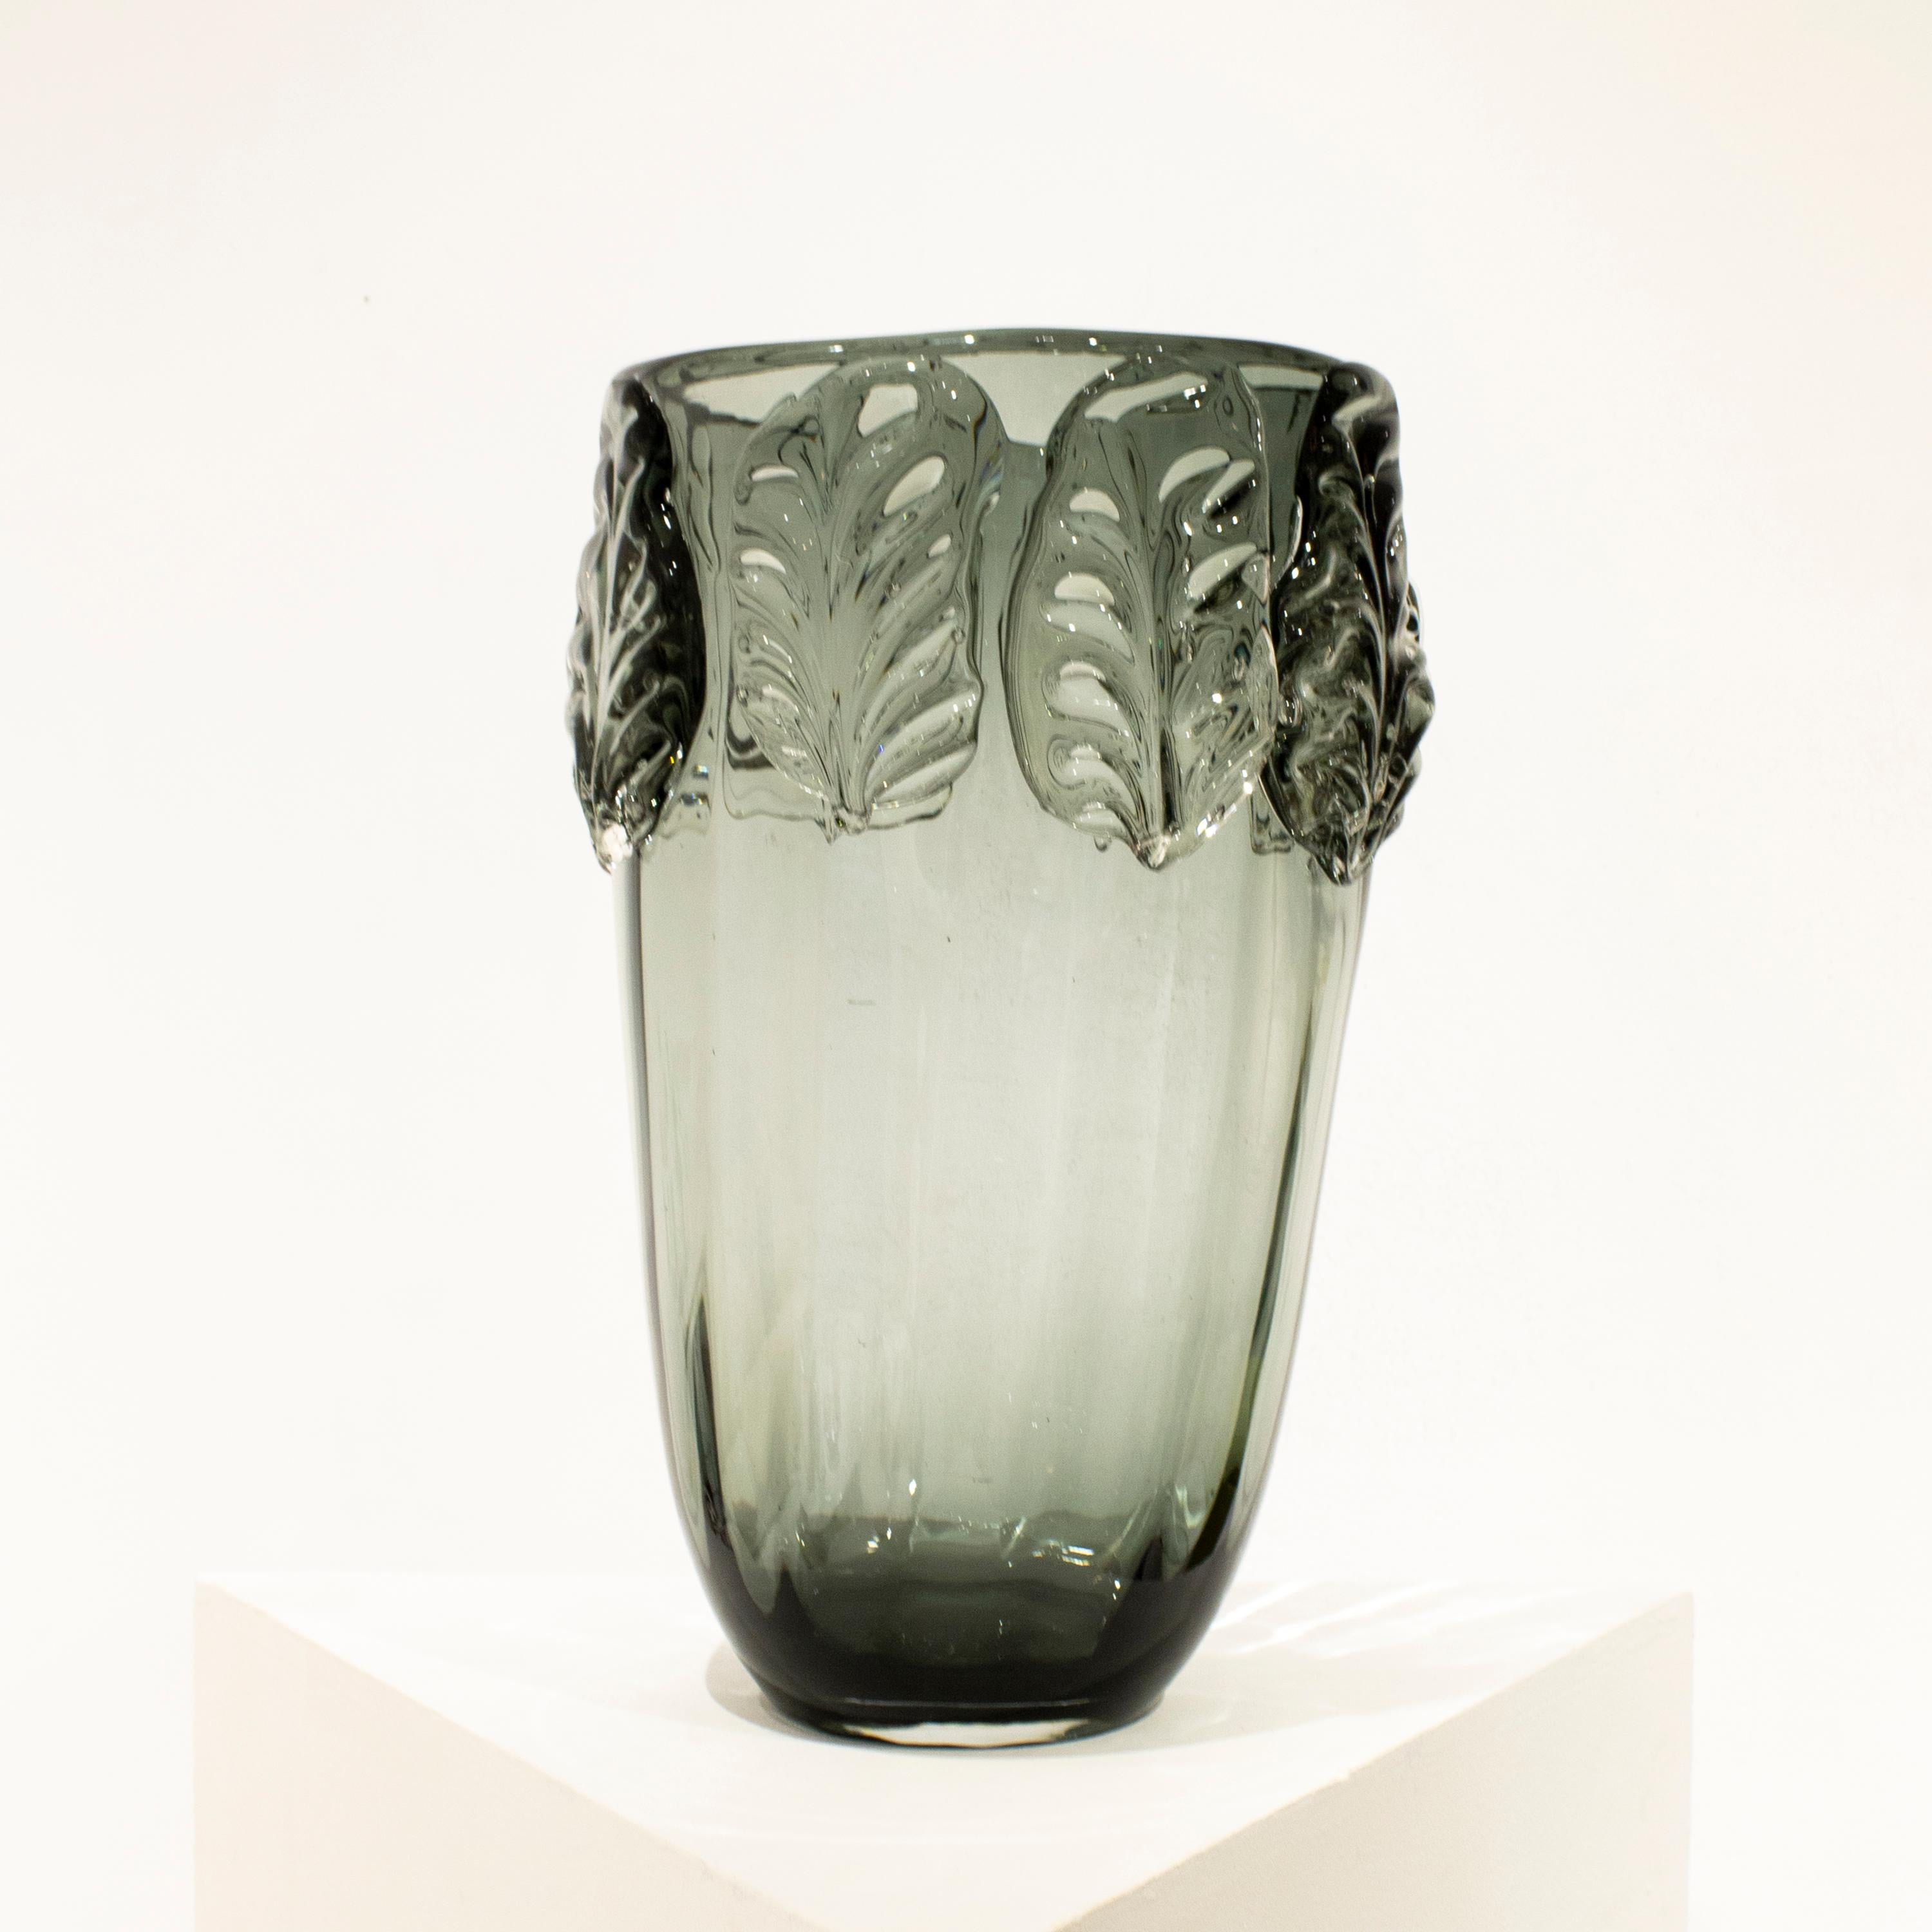 Vase en verre semi-transparent gris italien soufflé à la main, avec des formes organiques et des motifs végétaux. 